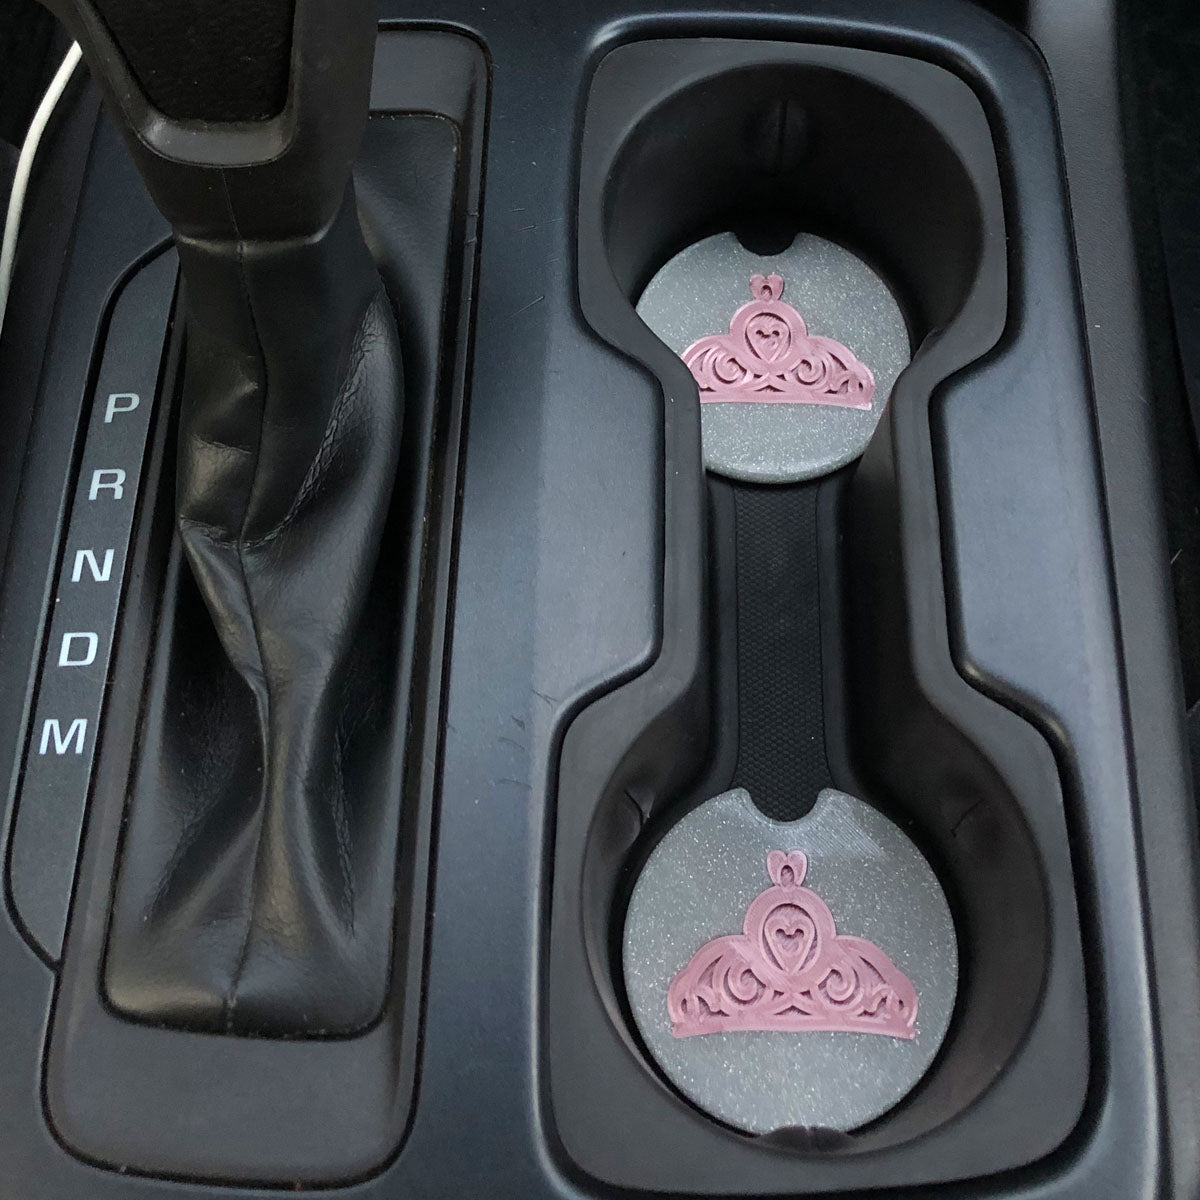 Princess Tiara Car Coasters - Set of 2 - CLEARANCE